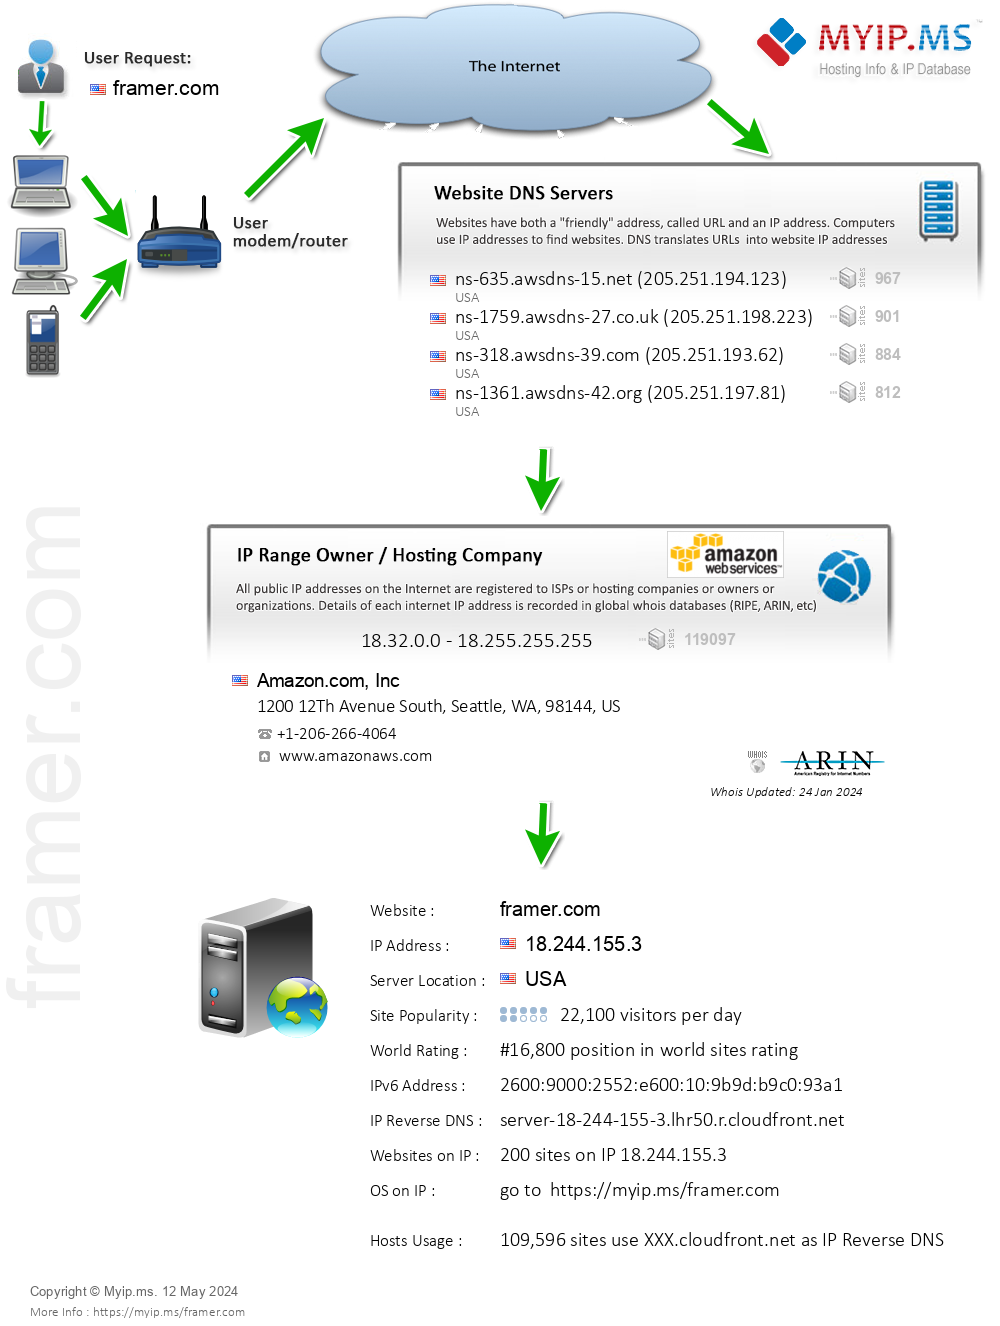 Framer.com - Website Hosting Visual IP Diagram